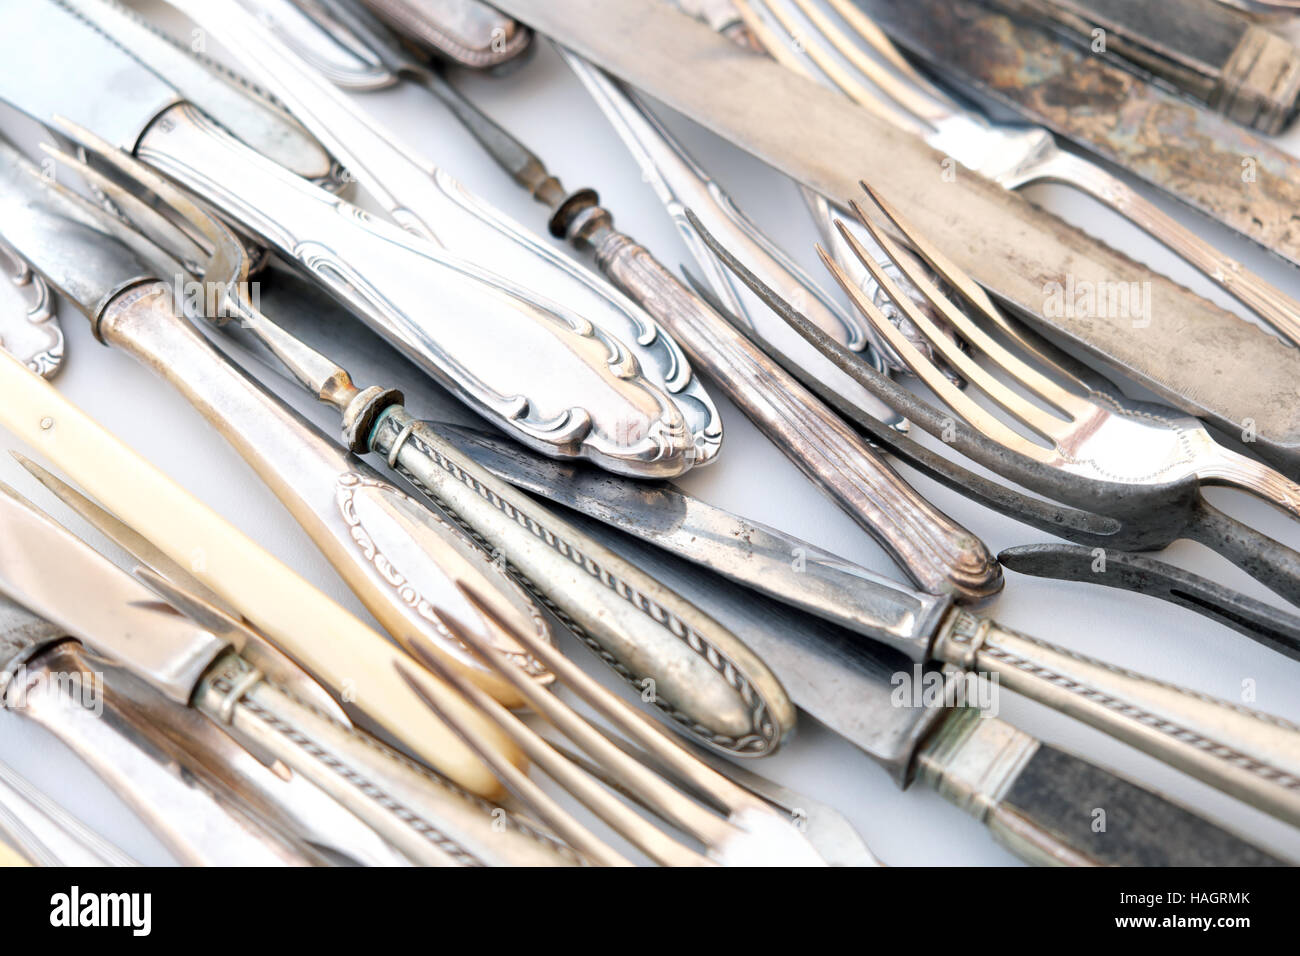 Ancienne coutellerie, couverts, vintage belle fourchette et couteau d'argent Banque D'Images